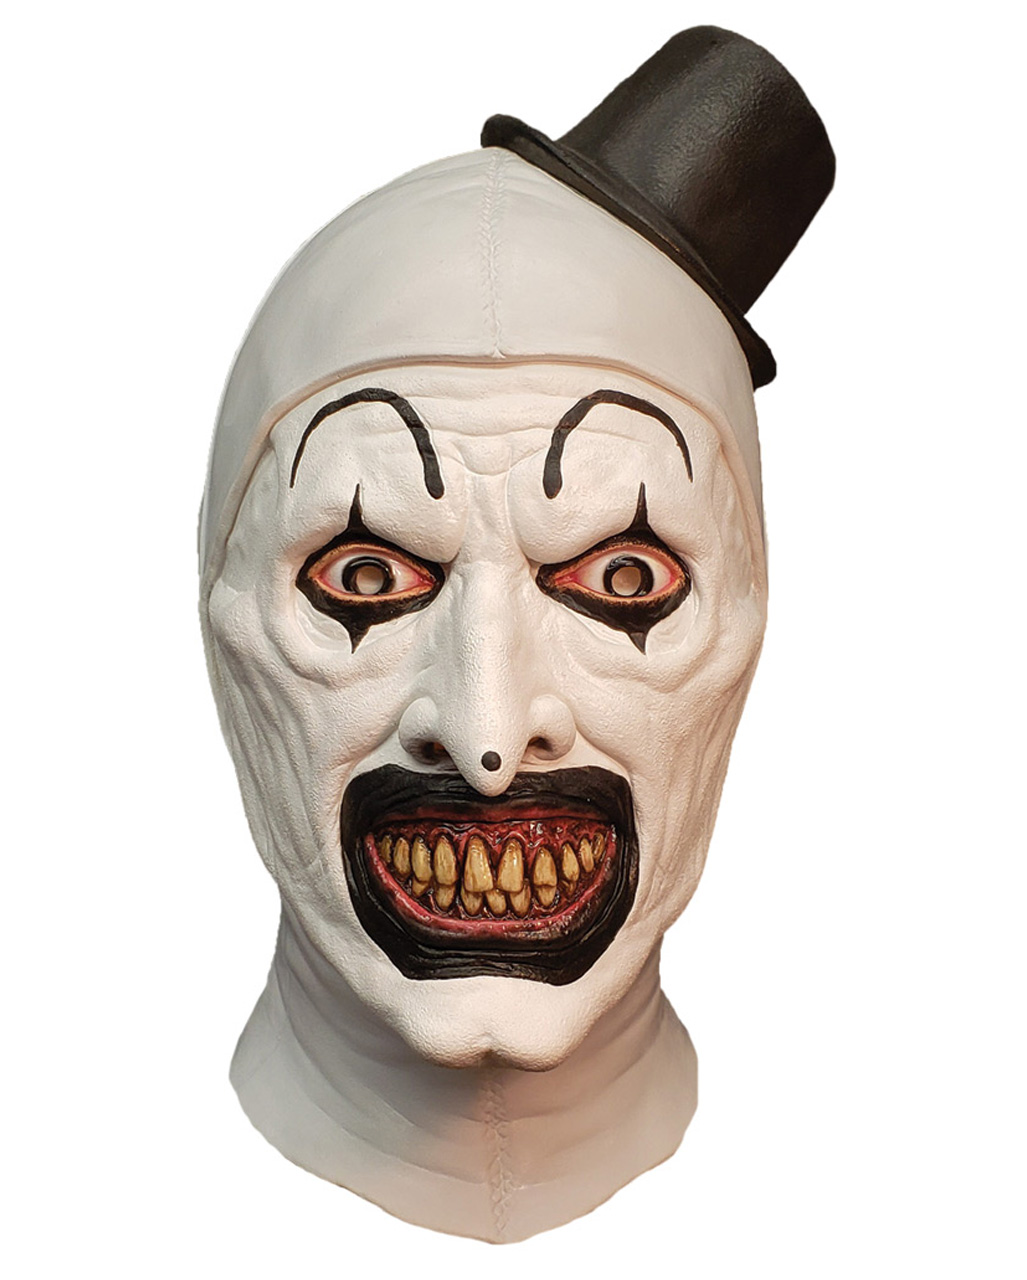 Art the Clown Maske - Terrifier für Halloween von Horror-Shop.com